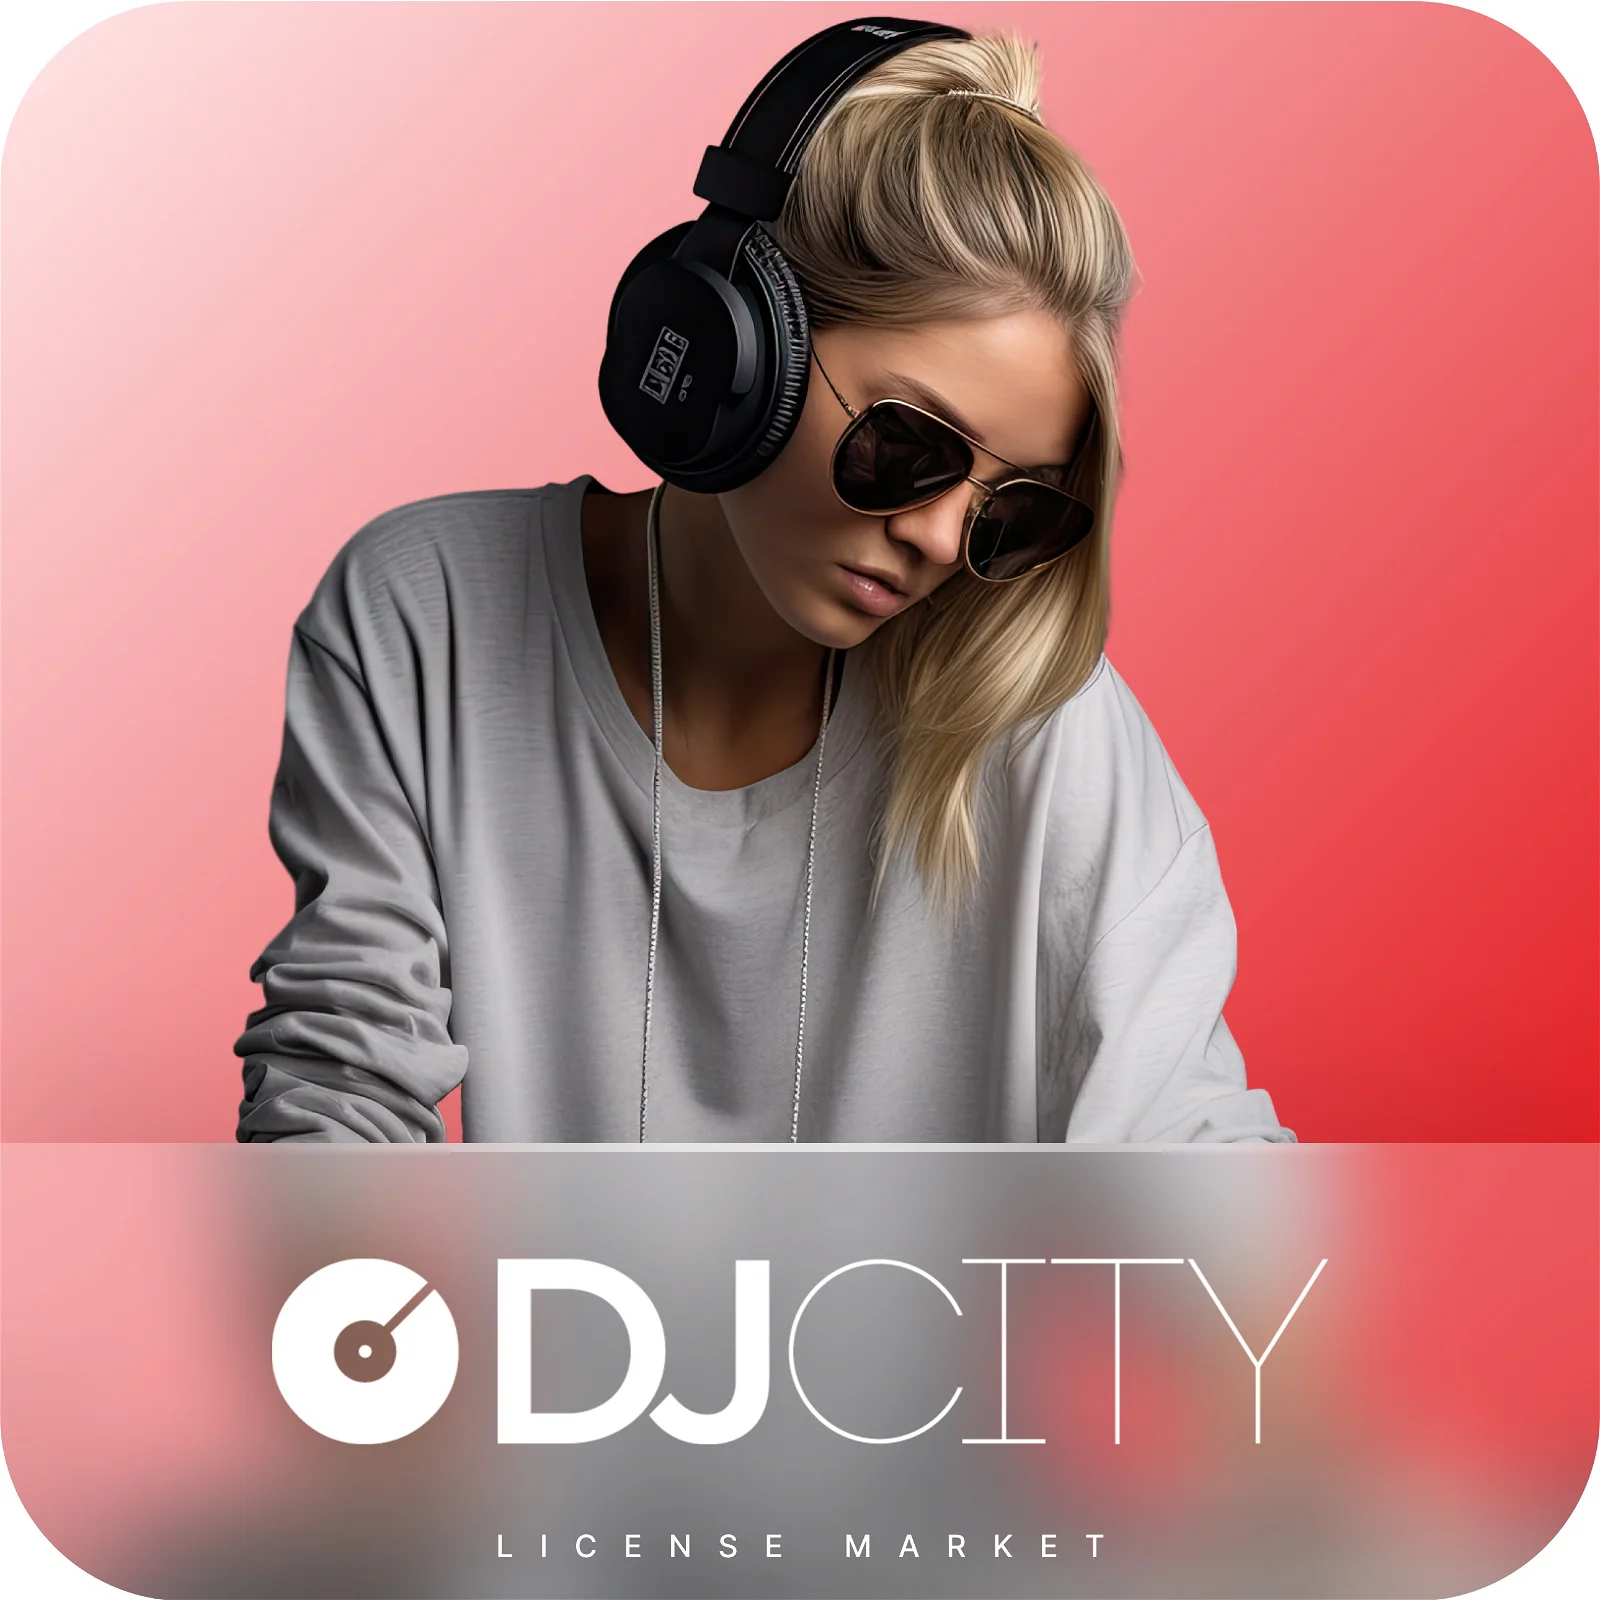 خرید اکانت DJ City Premium